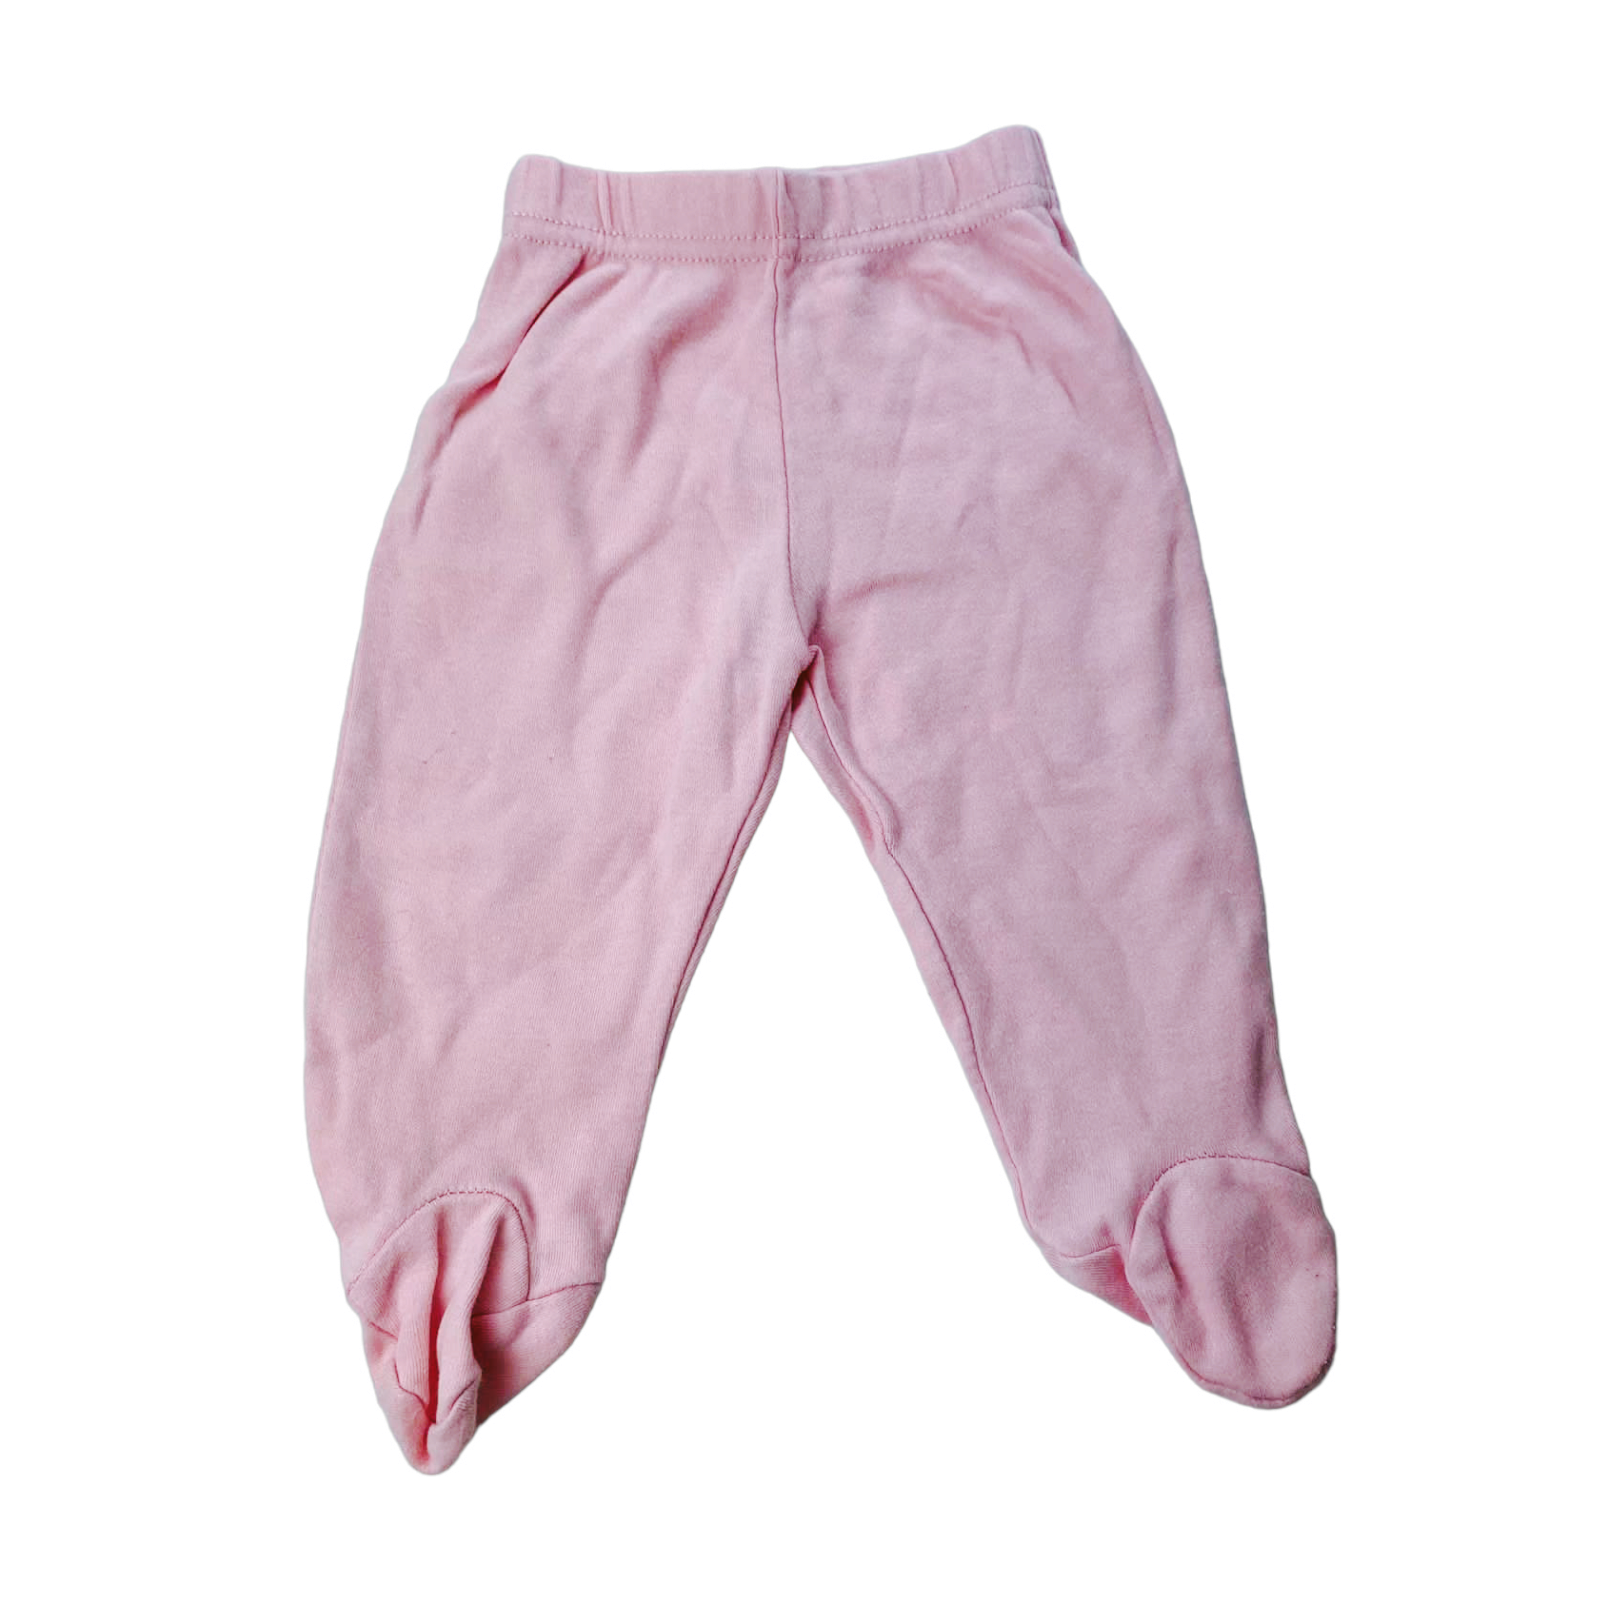 Panty de algodon rosada